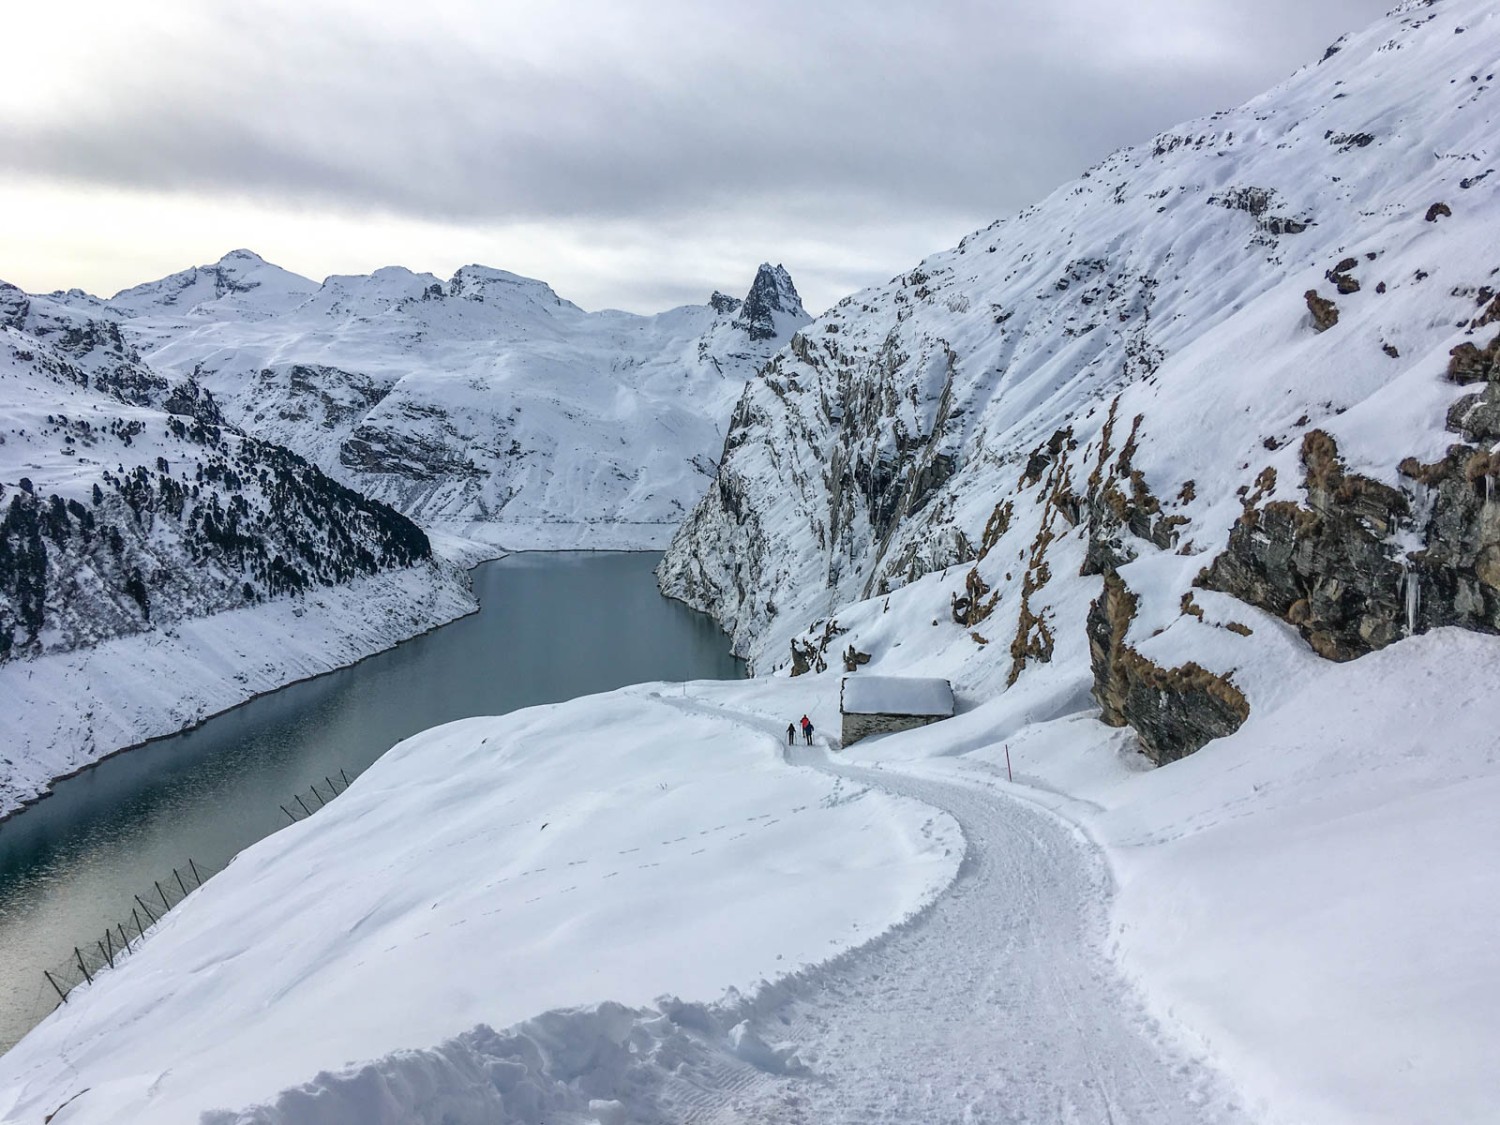 Schneeschuhe machen den Abstieg einfacher - sind aber auf dem gut präparierten Winterwanderweg nicht zwingend. Bild: Claudia Peter